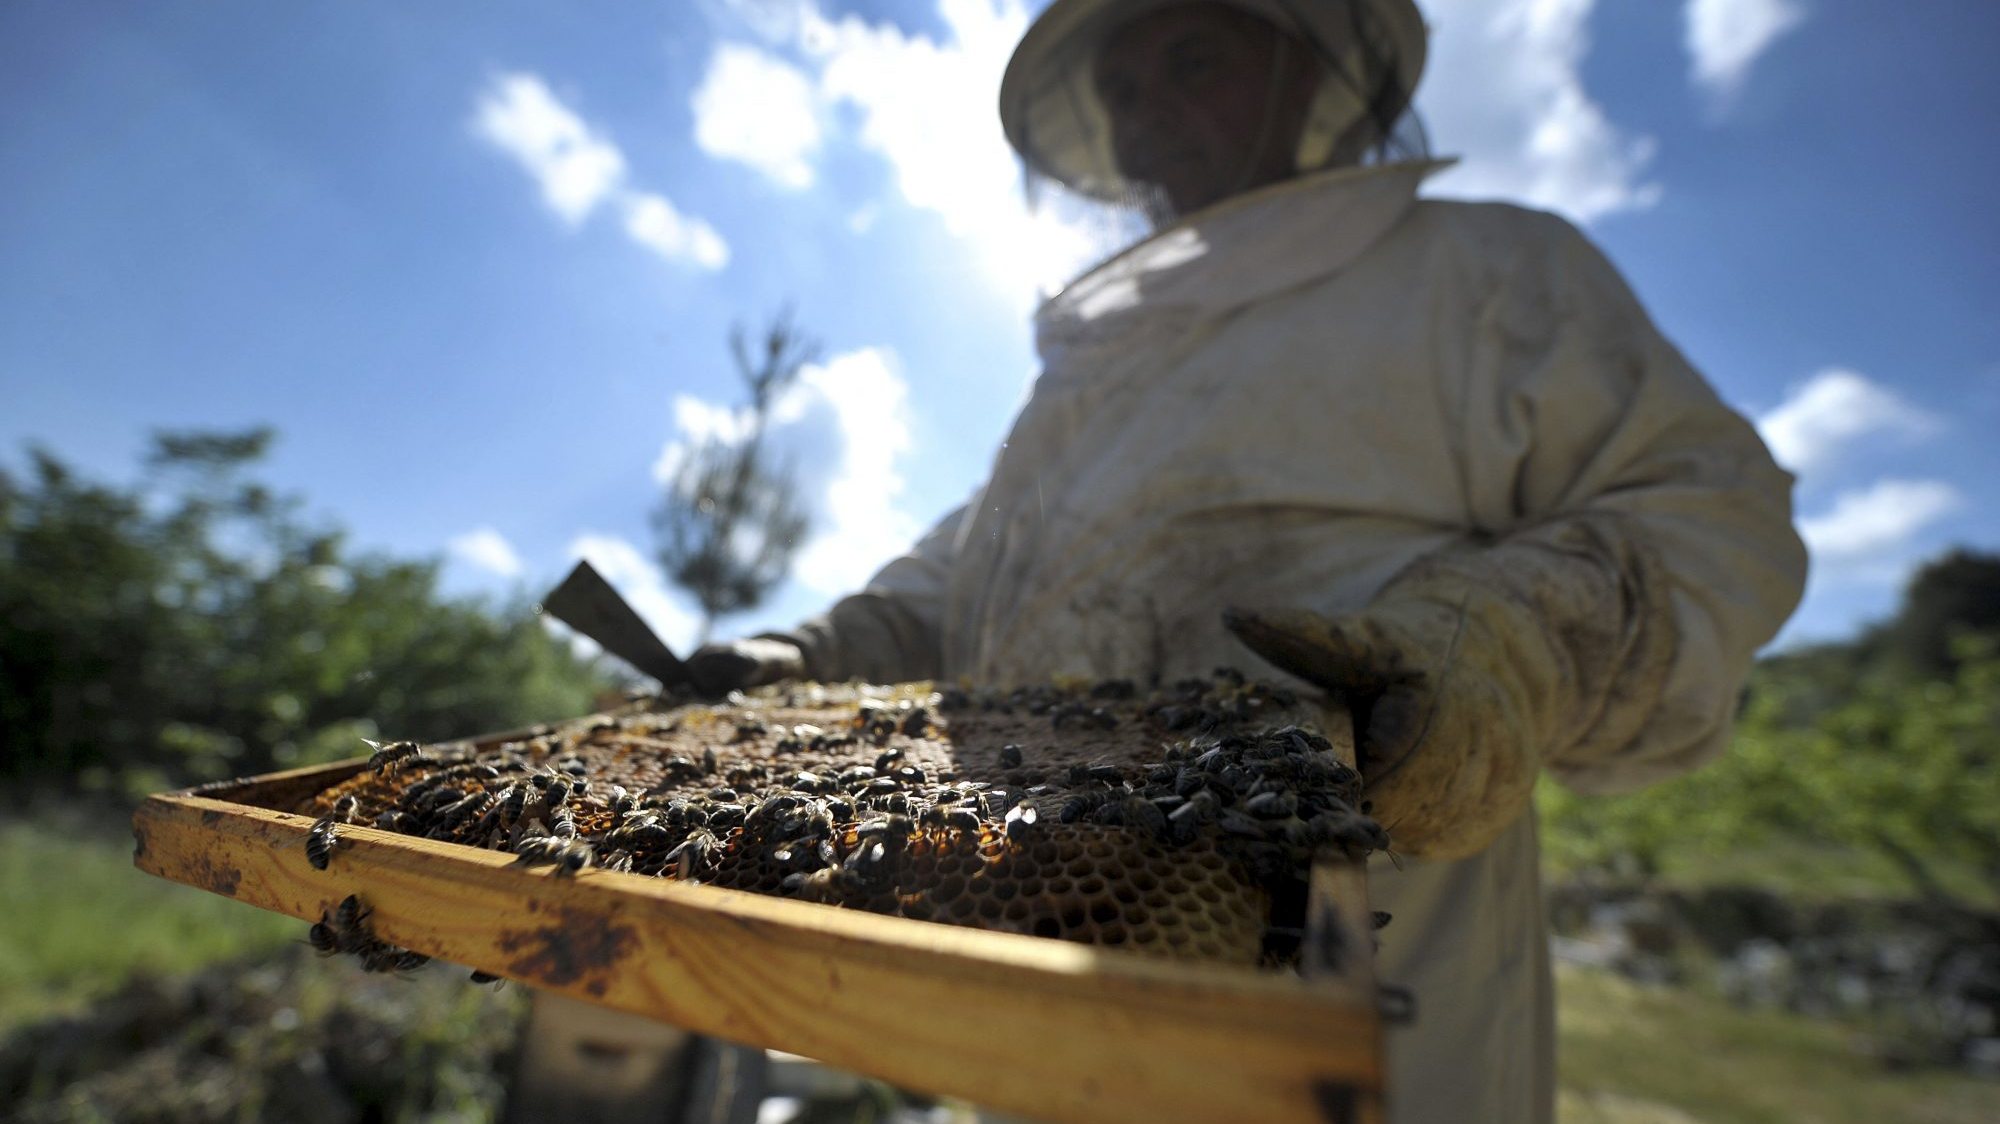 A associação representantiva dos apicultores do Norte afirma que as autoridades deveriam dar mais atenção ao problema